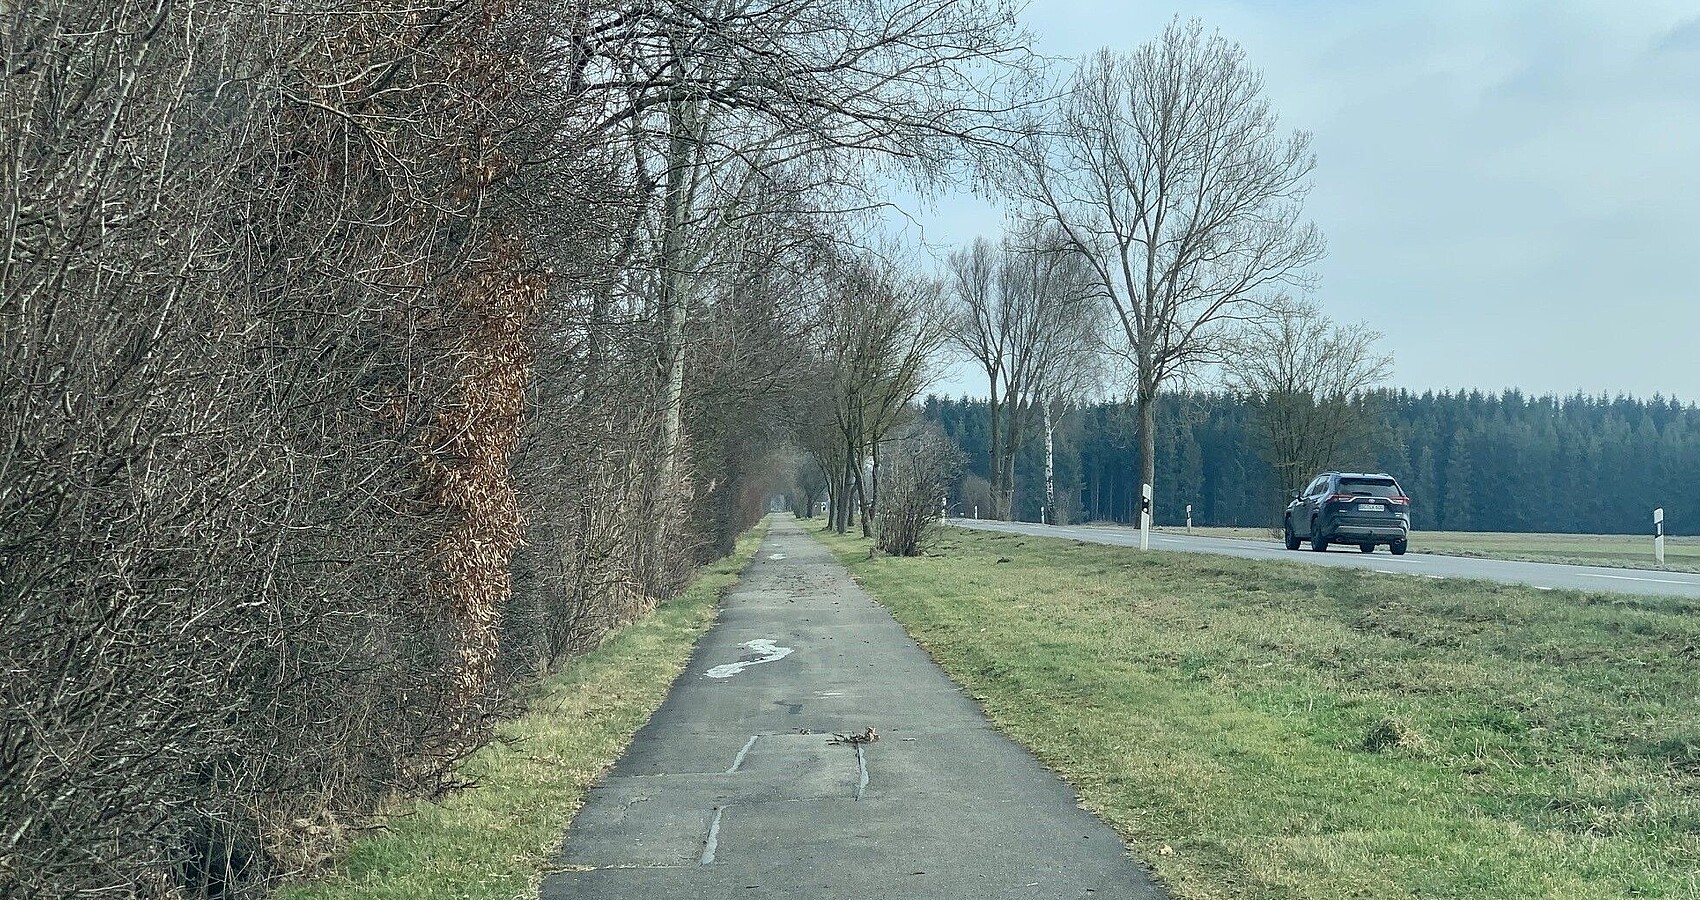 Das Bild zeigt eine schadhafte Straße an der links entlang ein schadhafter Radweg führt. Es befindet sich ein Auto auf der Fahrbahn. Links und im Hintergrund Wald